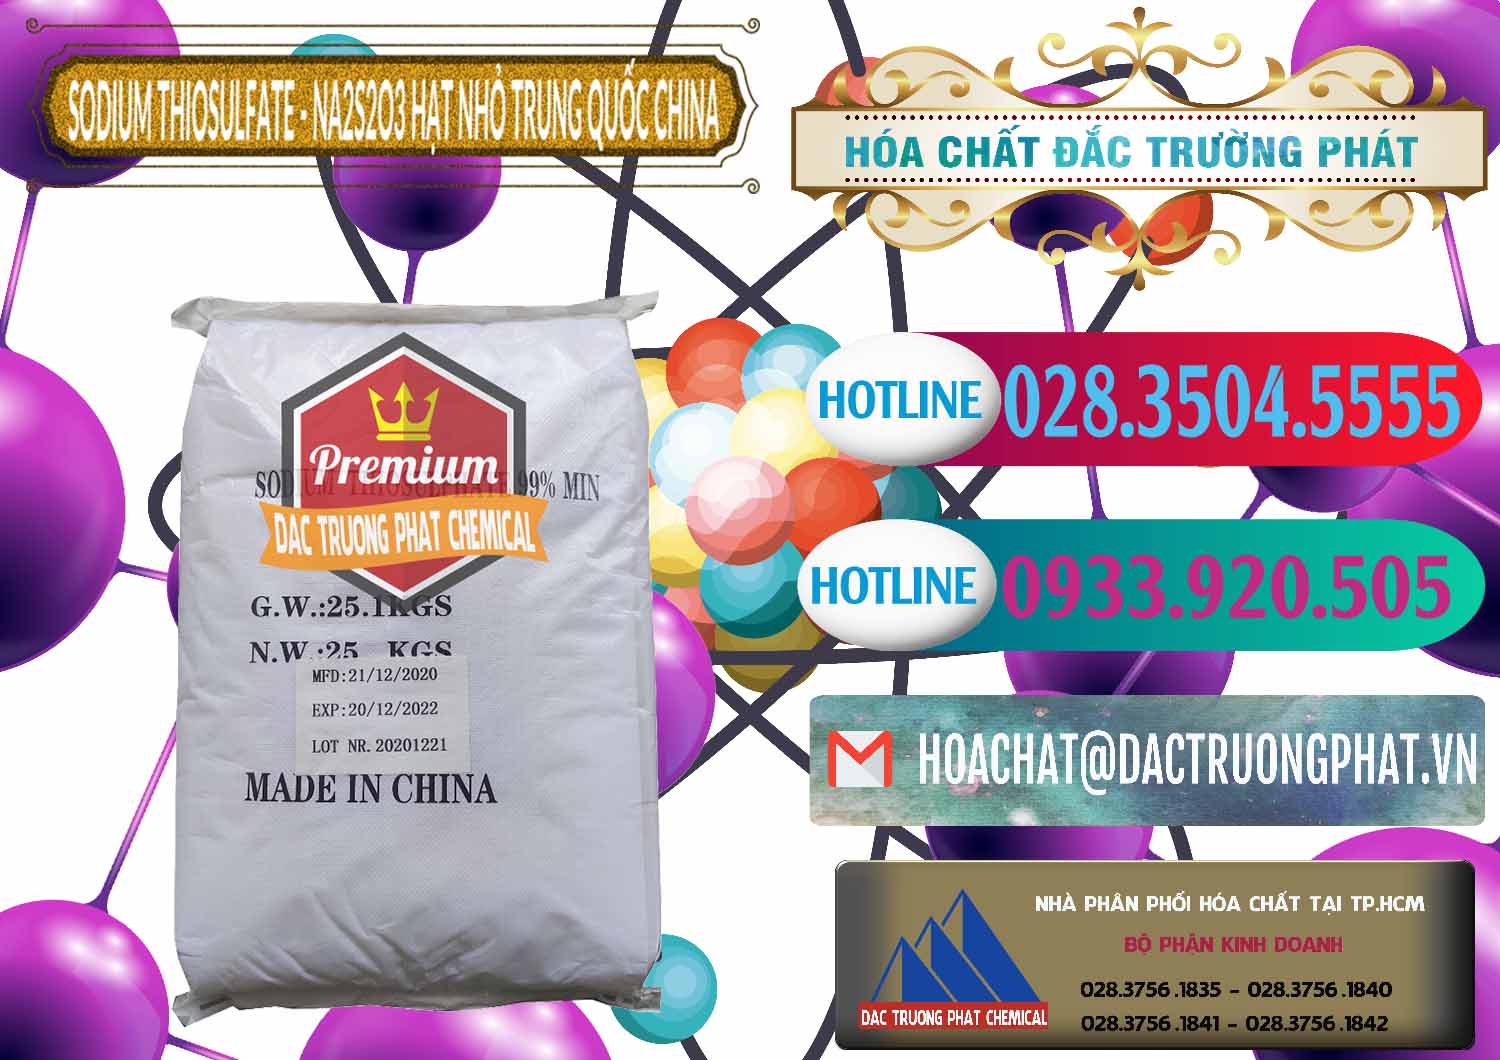 Cty chuyên kinh doanh ( bán ) Sodium Thiosulfate - NA2S2O3 Hạt Nhỏ Trung Quốc China - 0204 - Nhà cung cấp _ kinh doanh hóa chất tại TP.HCM - truongphat.vn